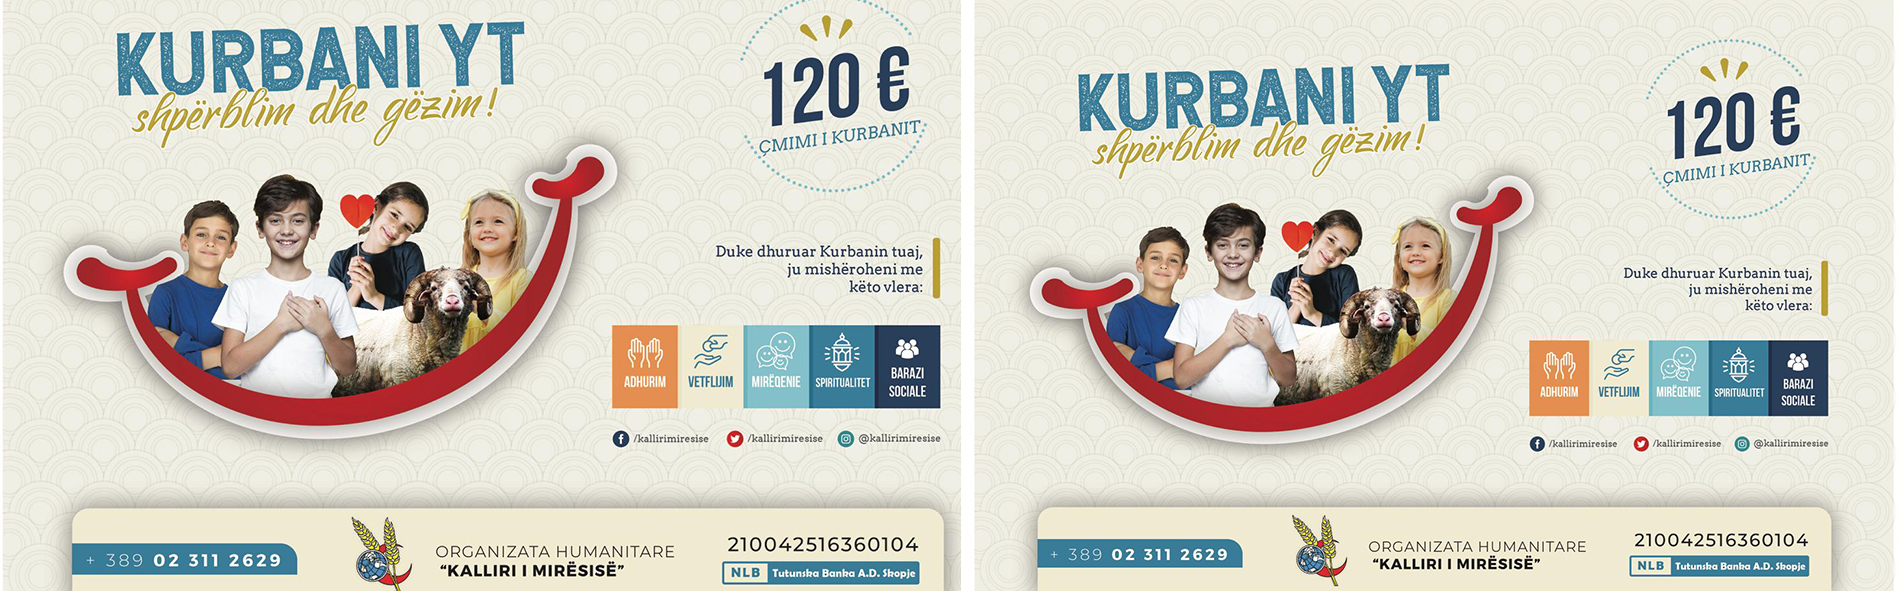 Kurbani 2020